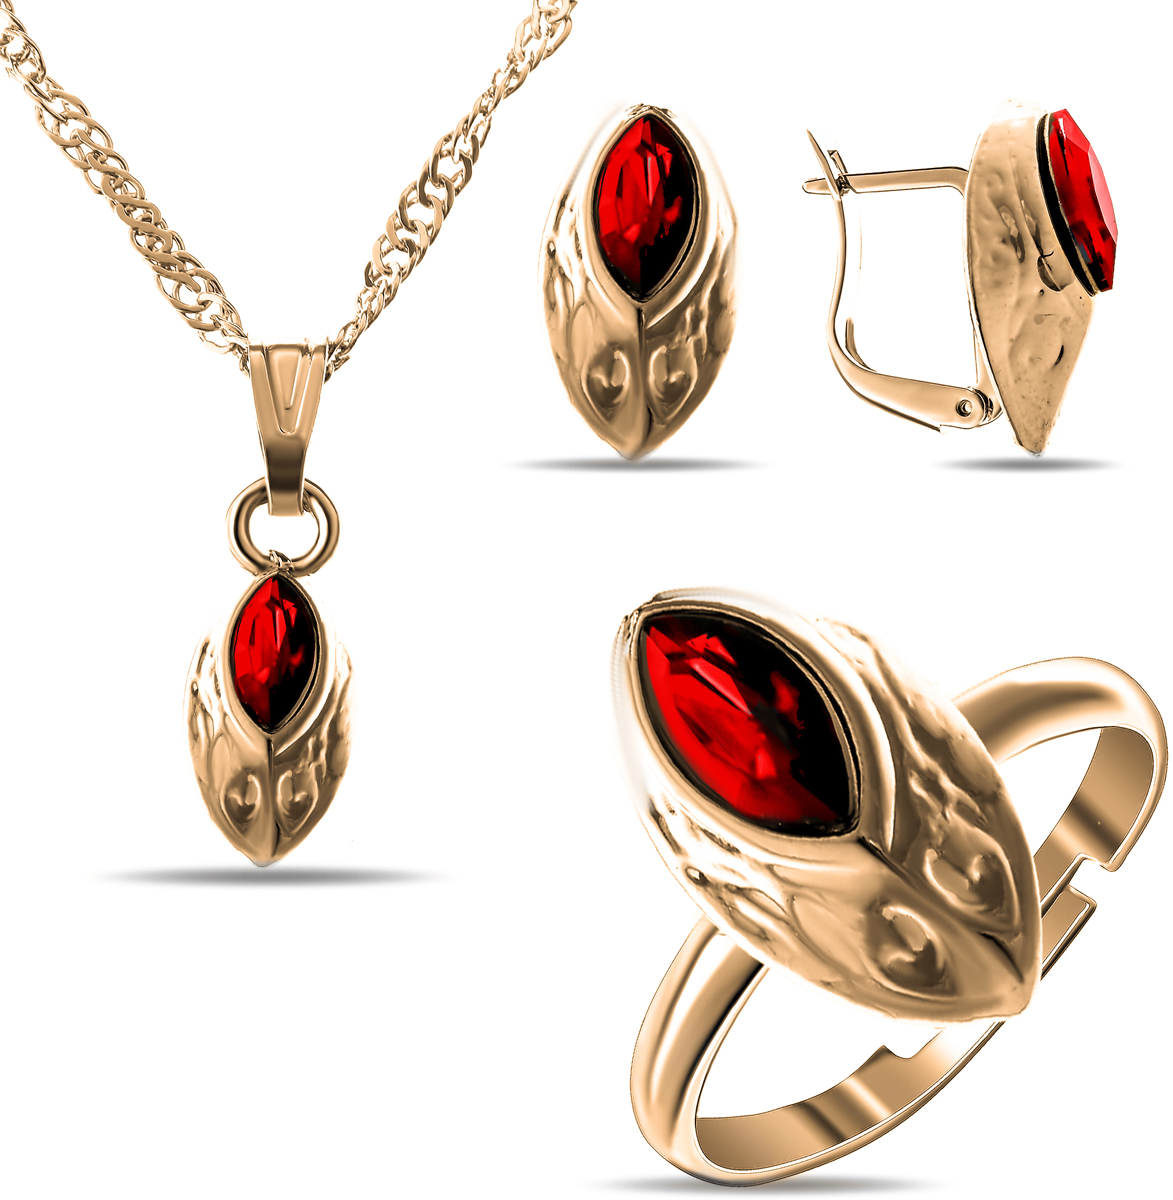 Комплект украшений Teosa: колье, серьги, кольцо, цвет: золотой, красный. T-SET-124